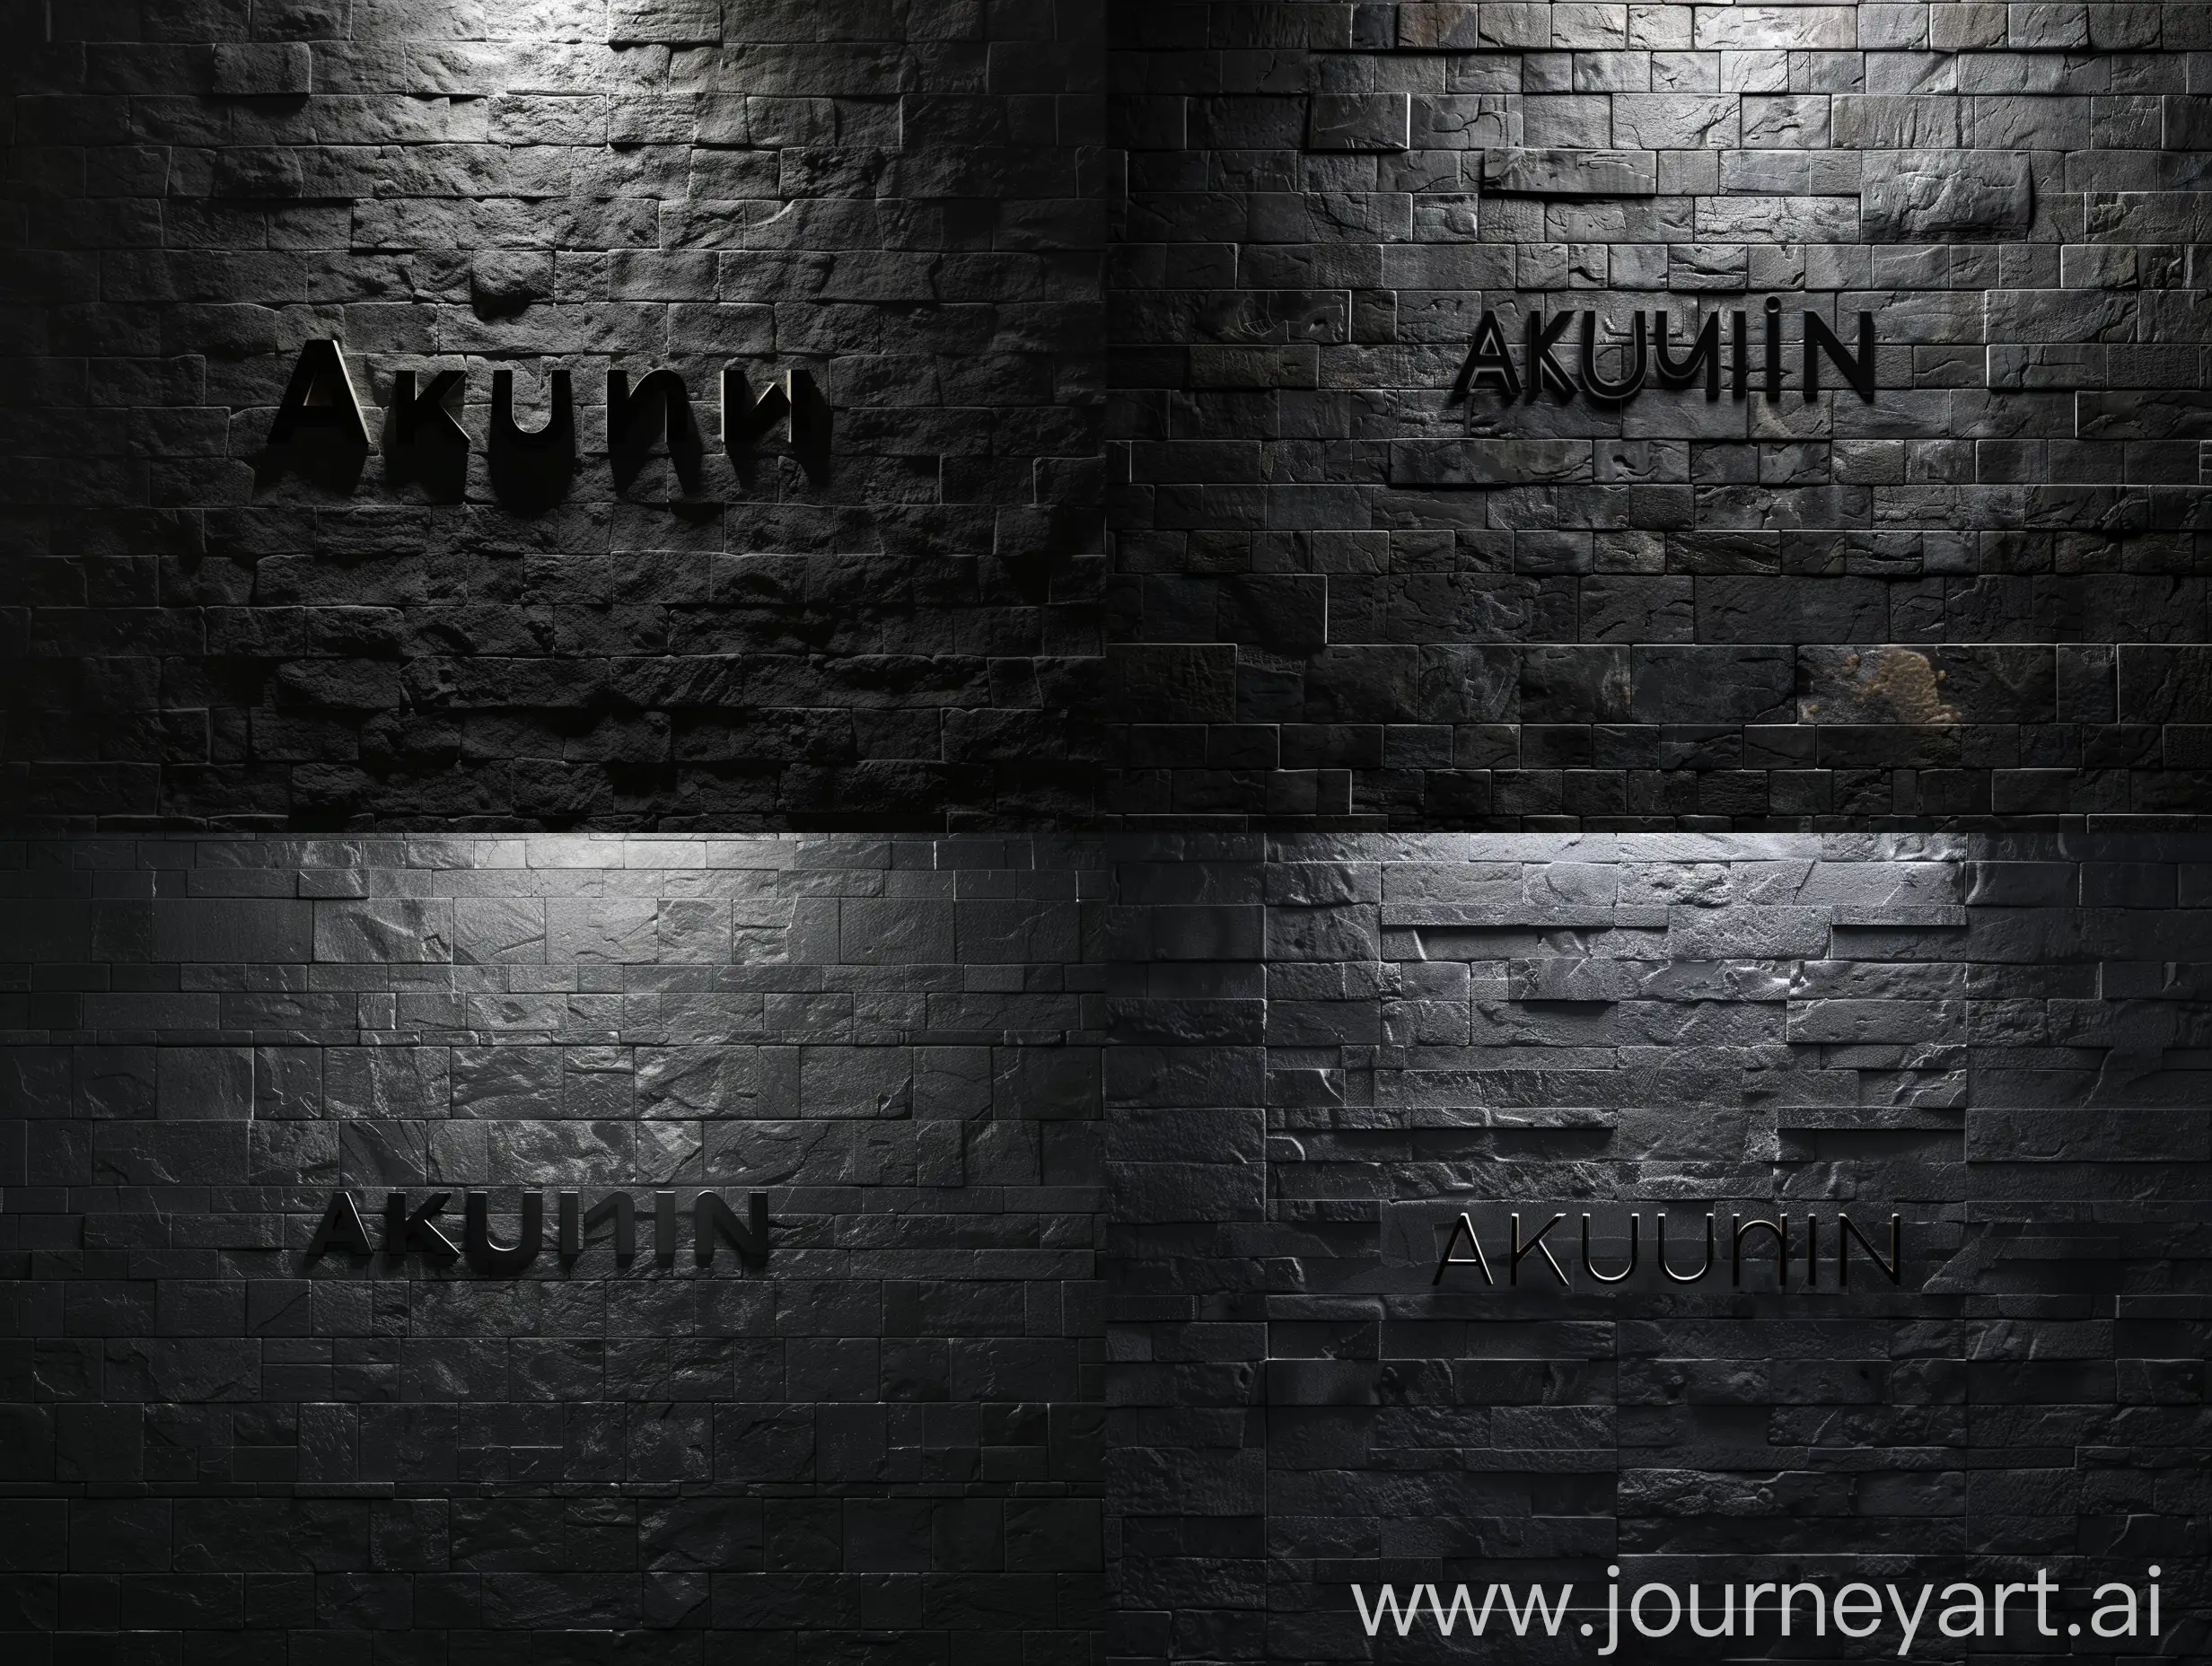 изображение черный минималистичный фон, серая кирпичная стена, в свете с тенью надпись "Akunin"